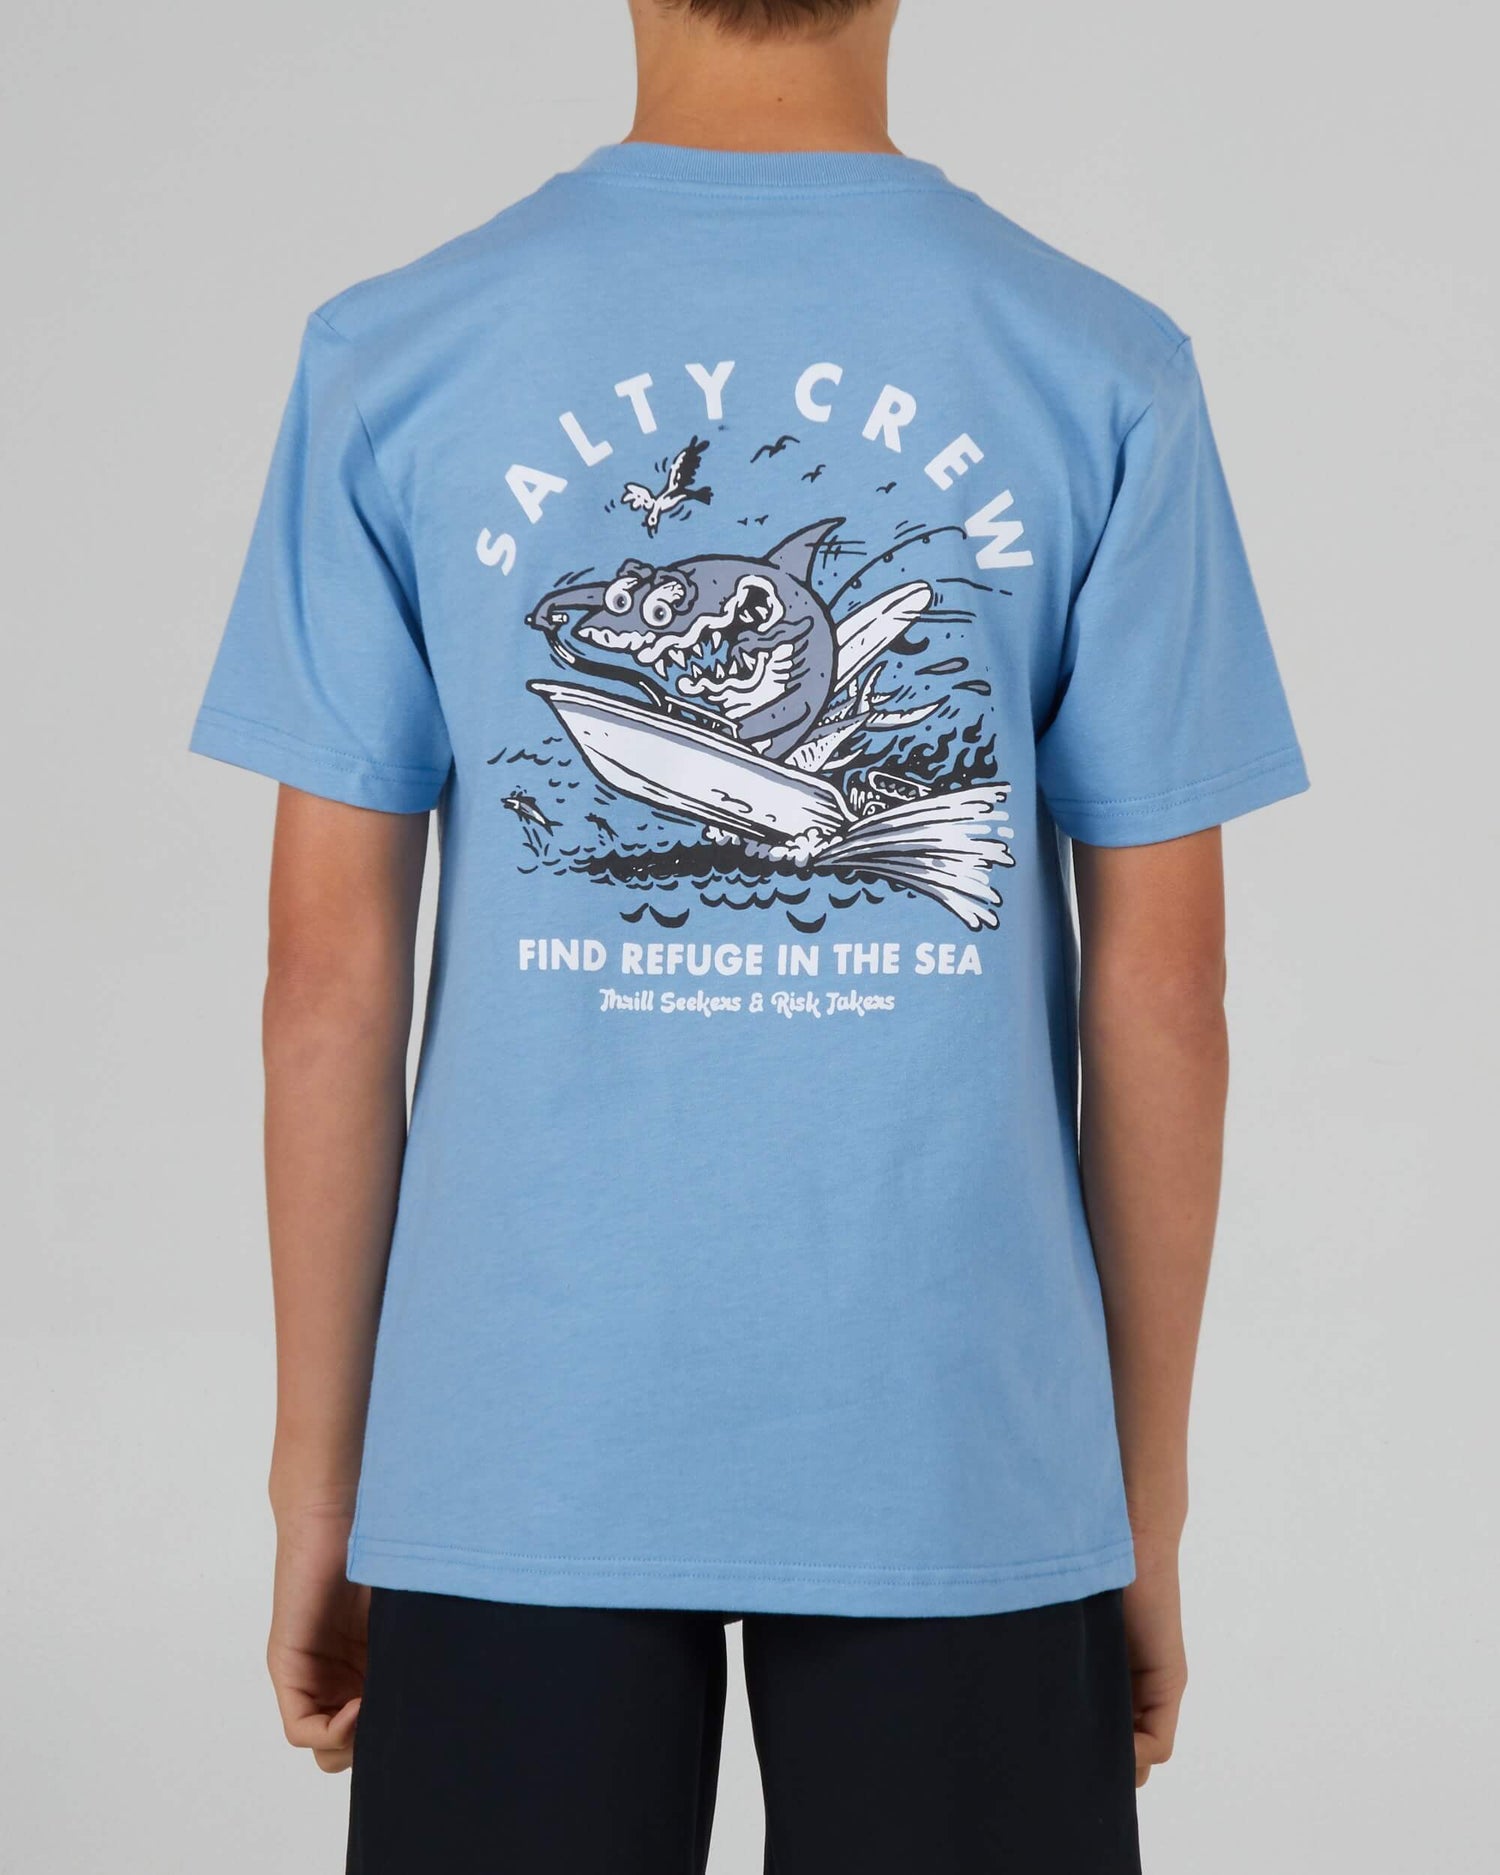 Salty Crew Boys - Hot Rod Shark Boys S/S Tee - Marinha Blue